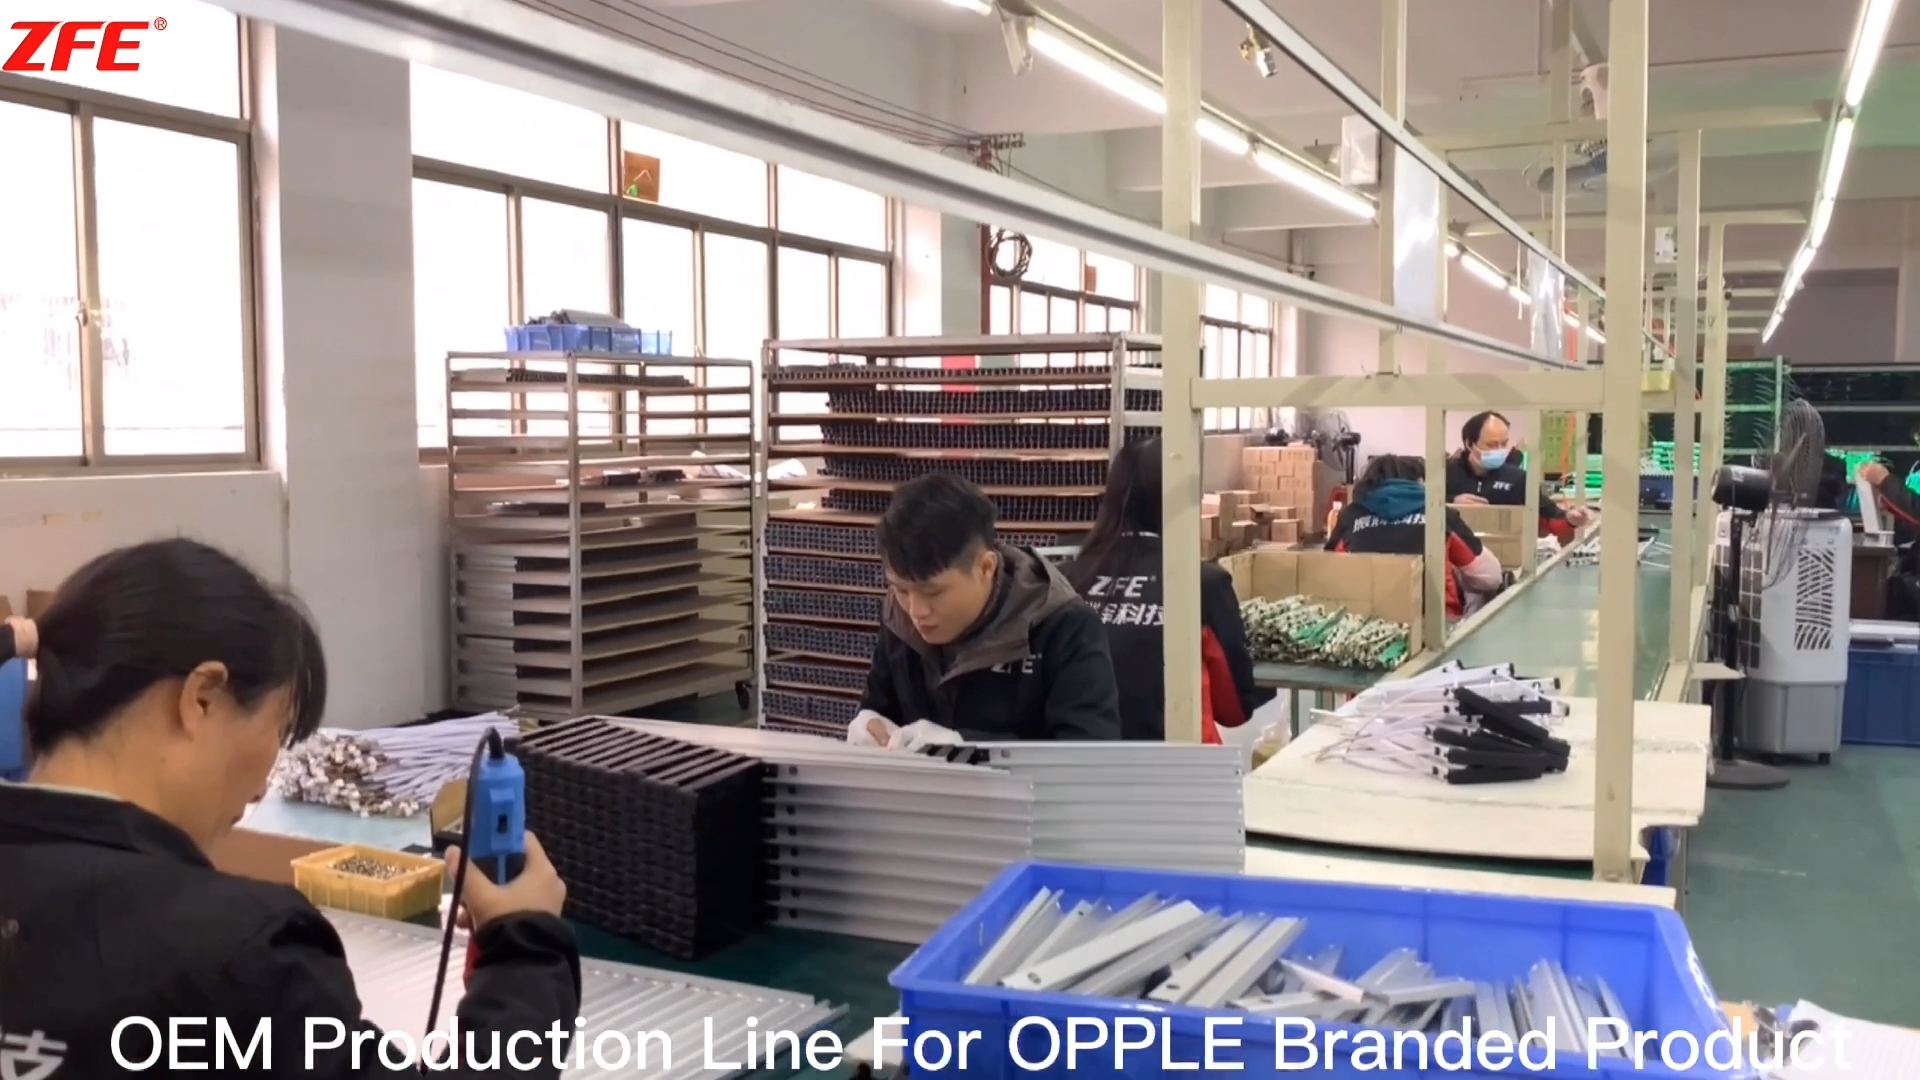 Přizpůsobená OEM výrobní linka pro značkový produkt OPPLE - Vyrobeno společností Guangdong Zhenhui Fire Technology